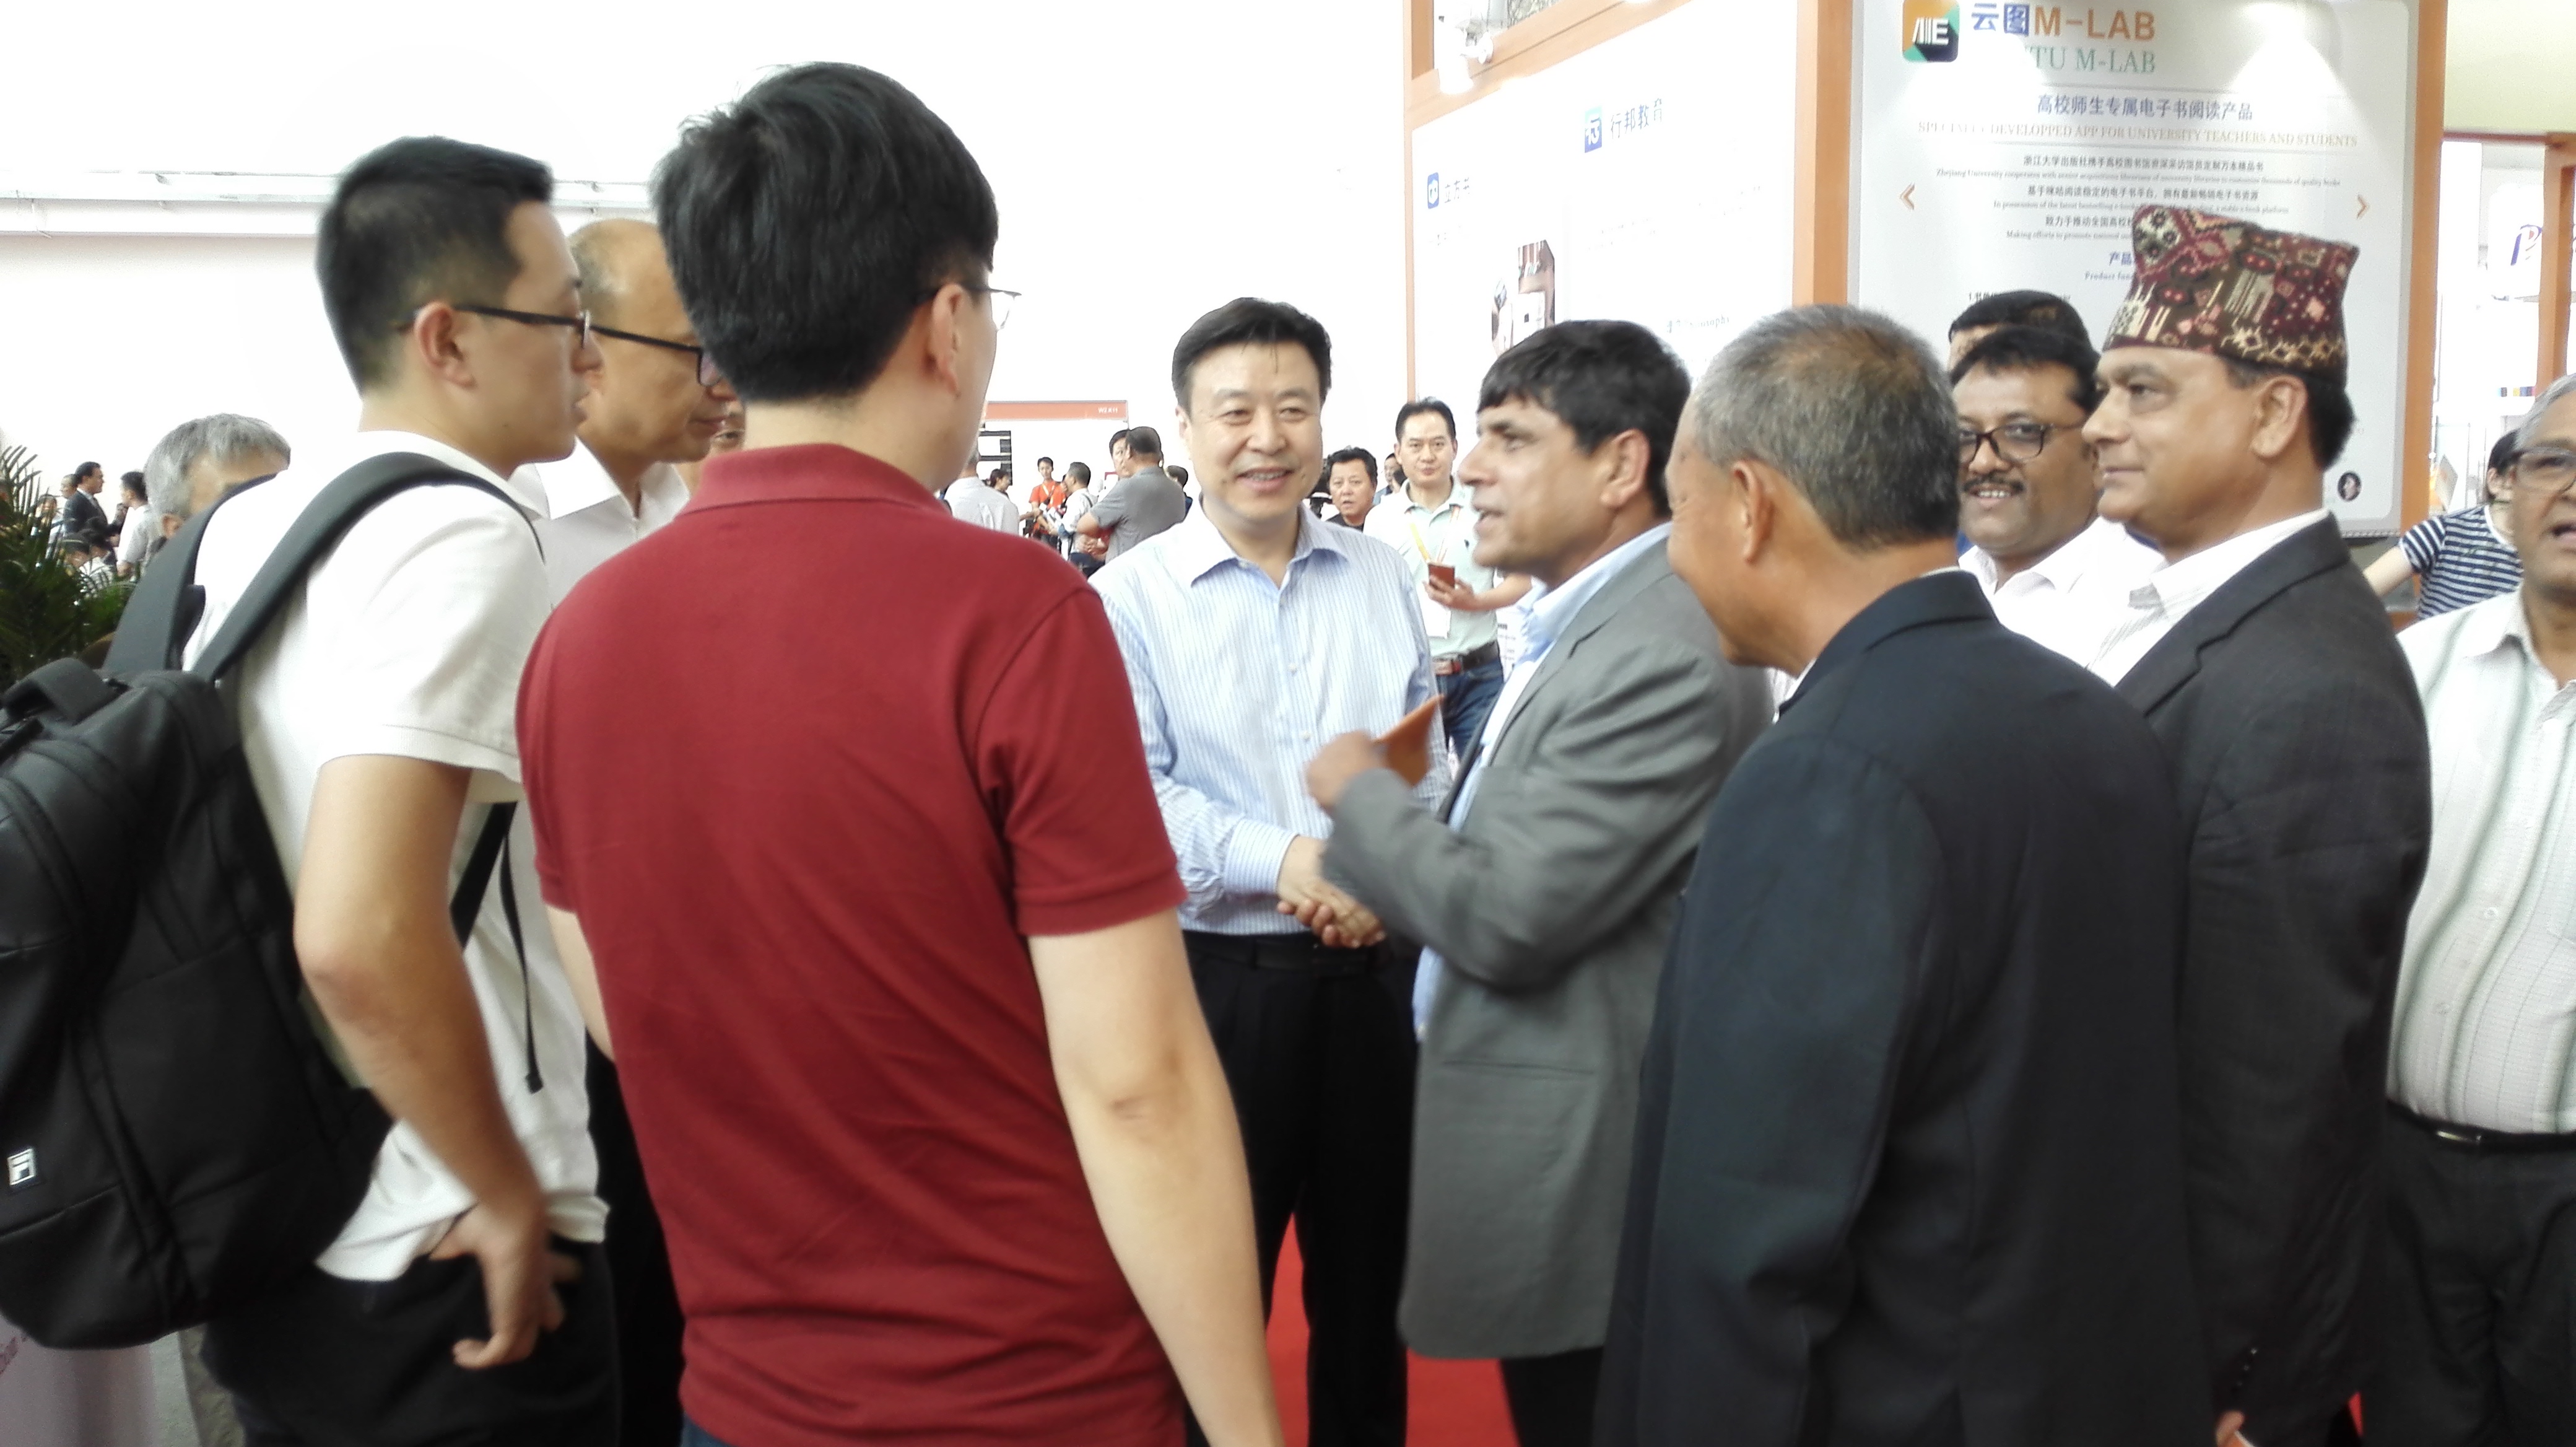 尼泊尔共产党代表团北京国际图书博览会期间访